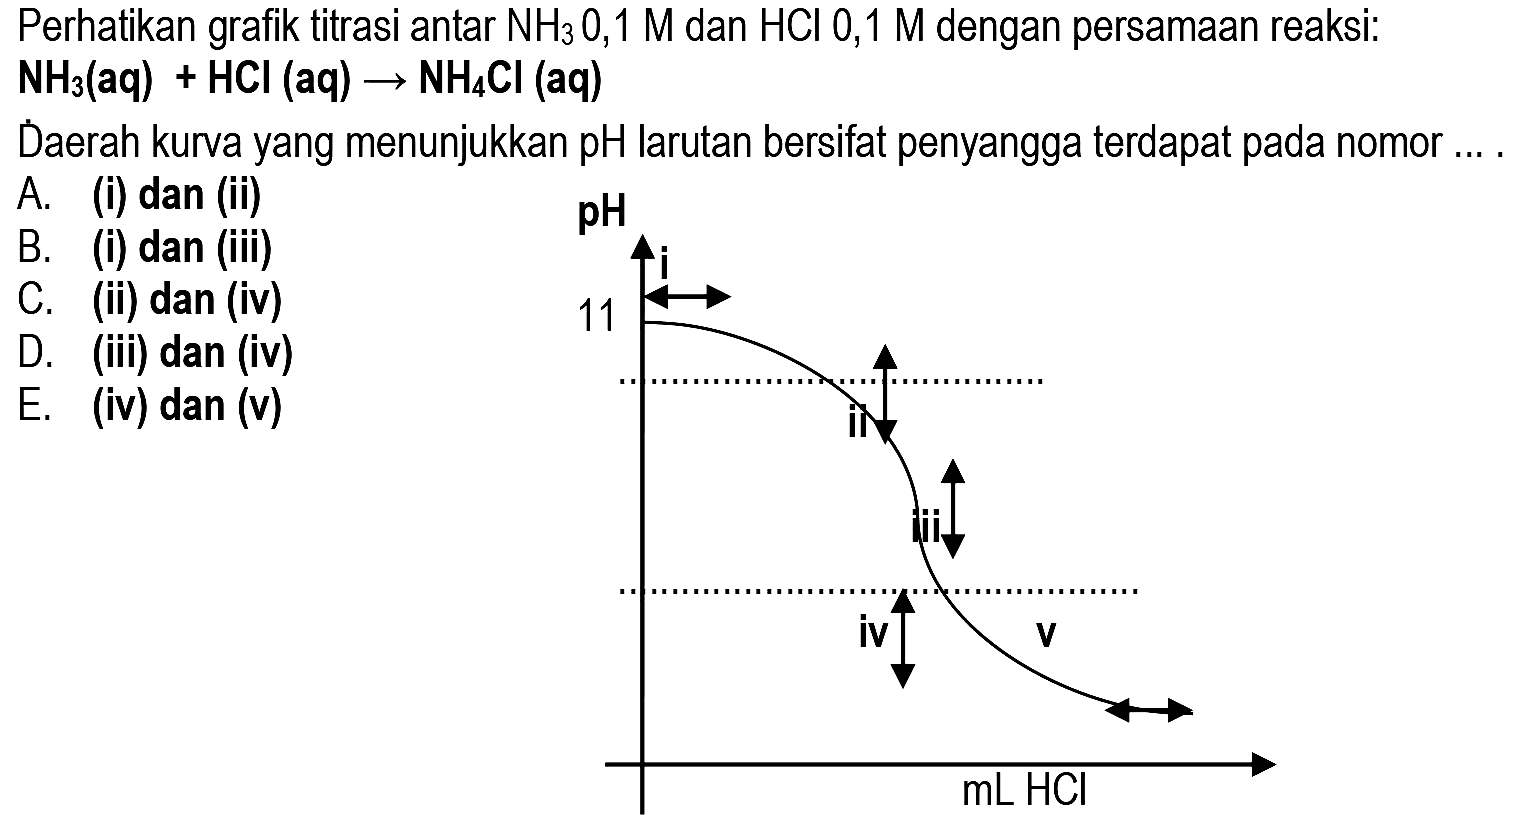 Perhatikan grafik titrasi antar  NH_(3) 0,1 M  dan  HCl 0,1 M  dengan persamaan reaksi:
 {N H)_(3)(aq)+HCl(aq) -> NH_(4) Cl(aq) 
D́aerah kurva yang menunjukkan pH larutan bersifat penyangga terdapat pada nomor ... .
A. (i) dan (ii)
B. (i) dan (iii)
C. (ii) dan (iv)
D. (iii) dan (iv)
E. (iv) dan (v)